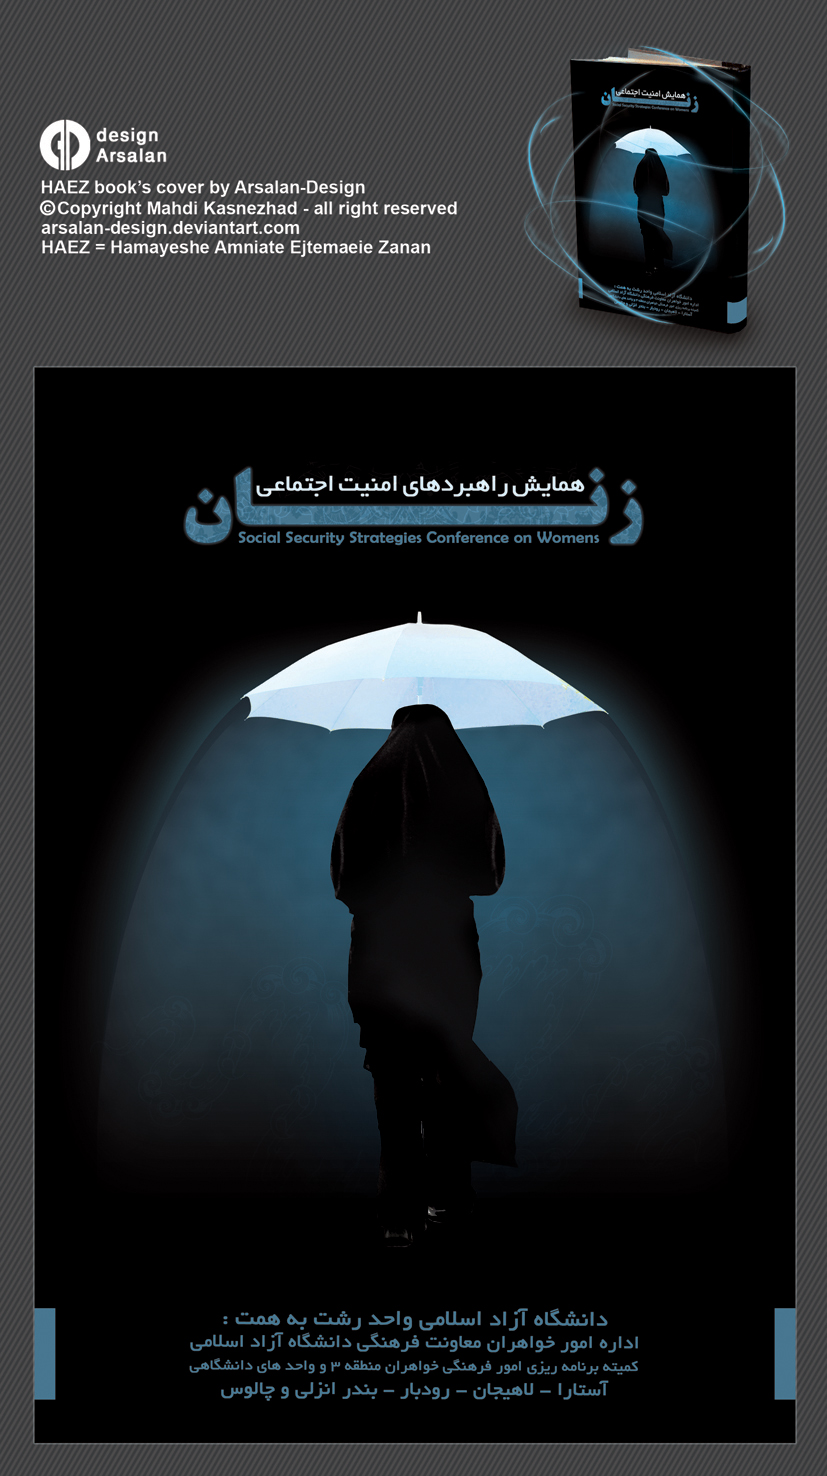 HAEZ_books_cover_by_arsalan_design.jpg